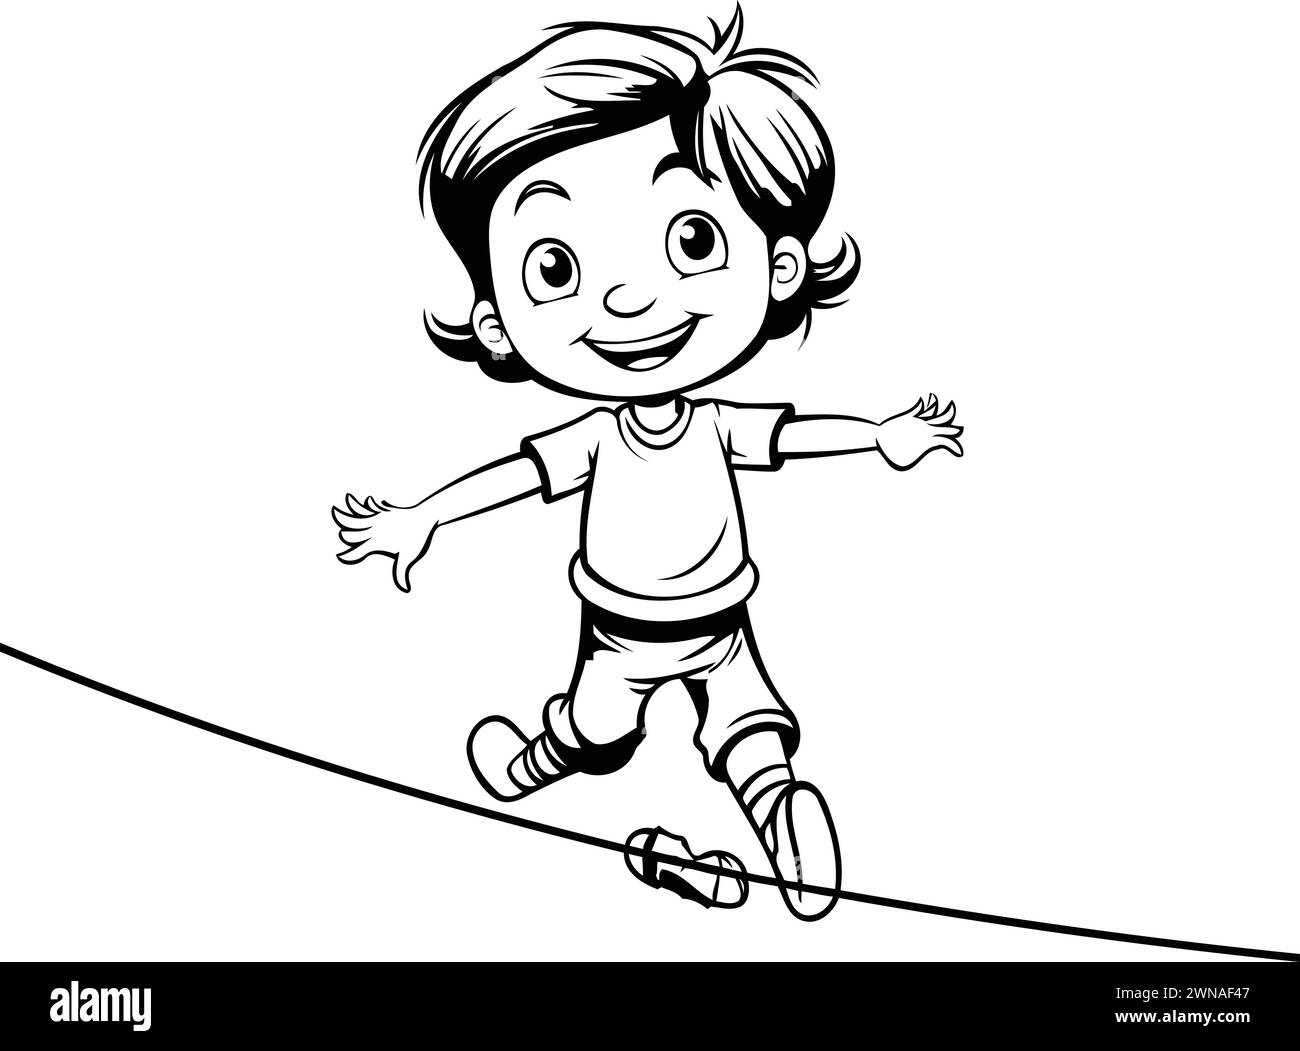 Dessin animé Kid équilibre sur une corde raide. Illustration vectorielle. Illustration de Vecteur